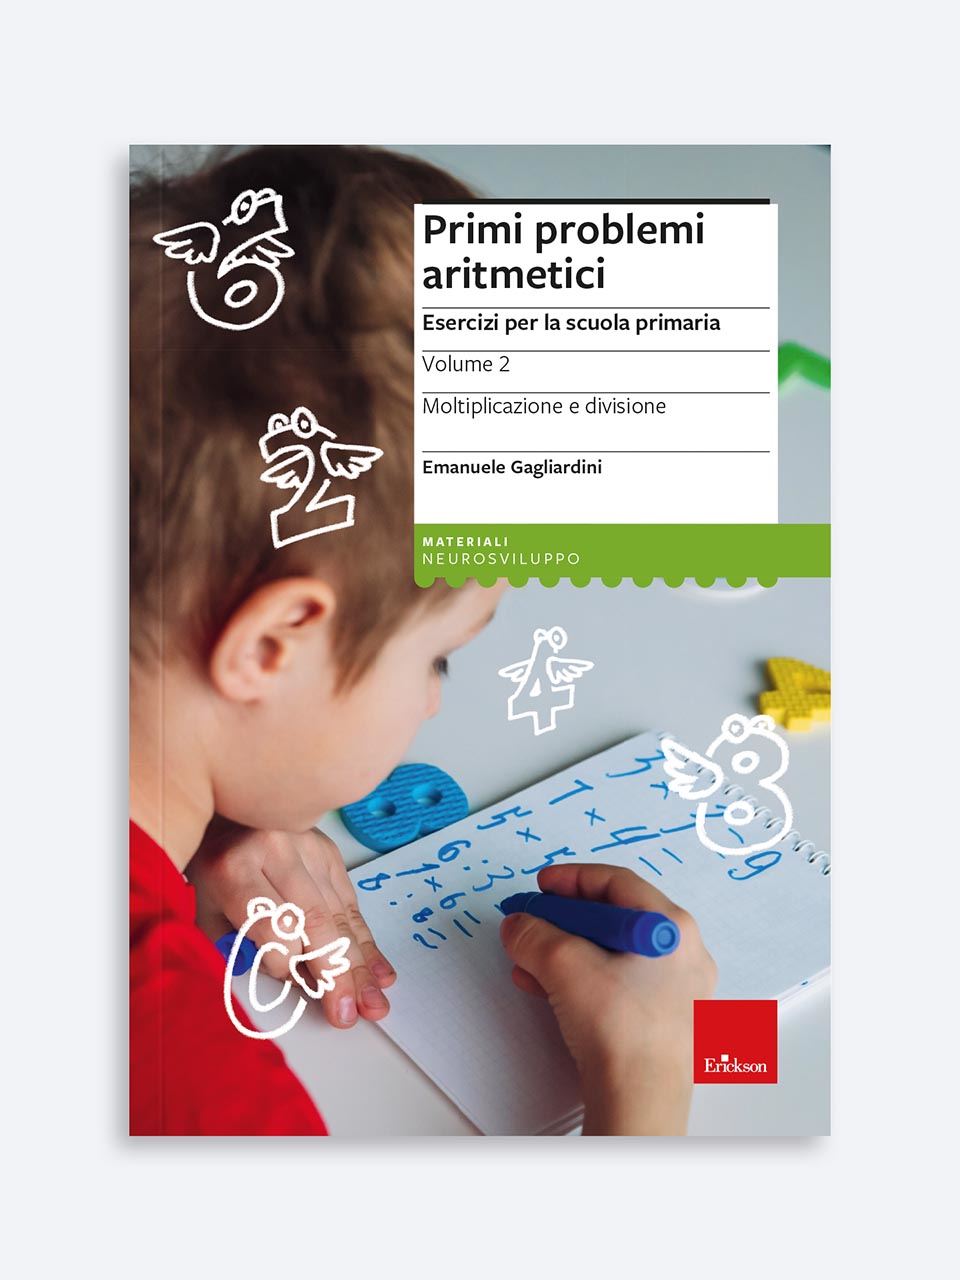 Primi problemi aritmetici - Libri - App e software - Erickson 6